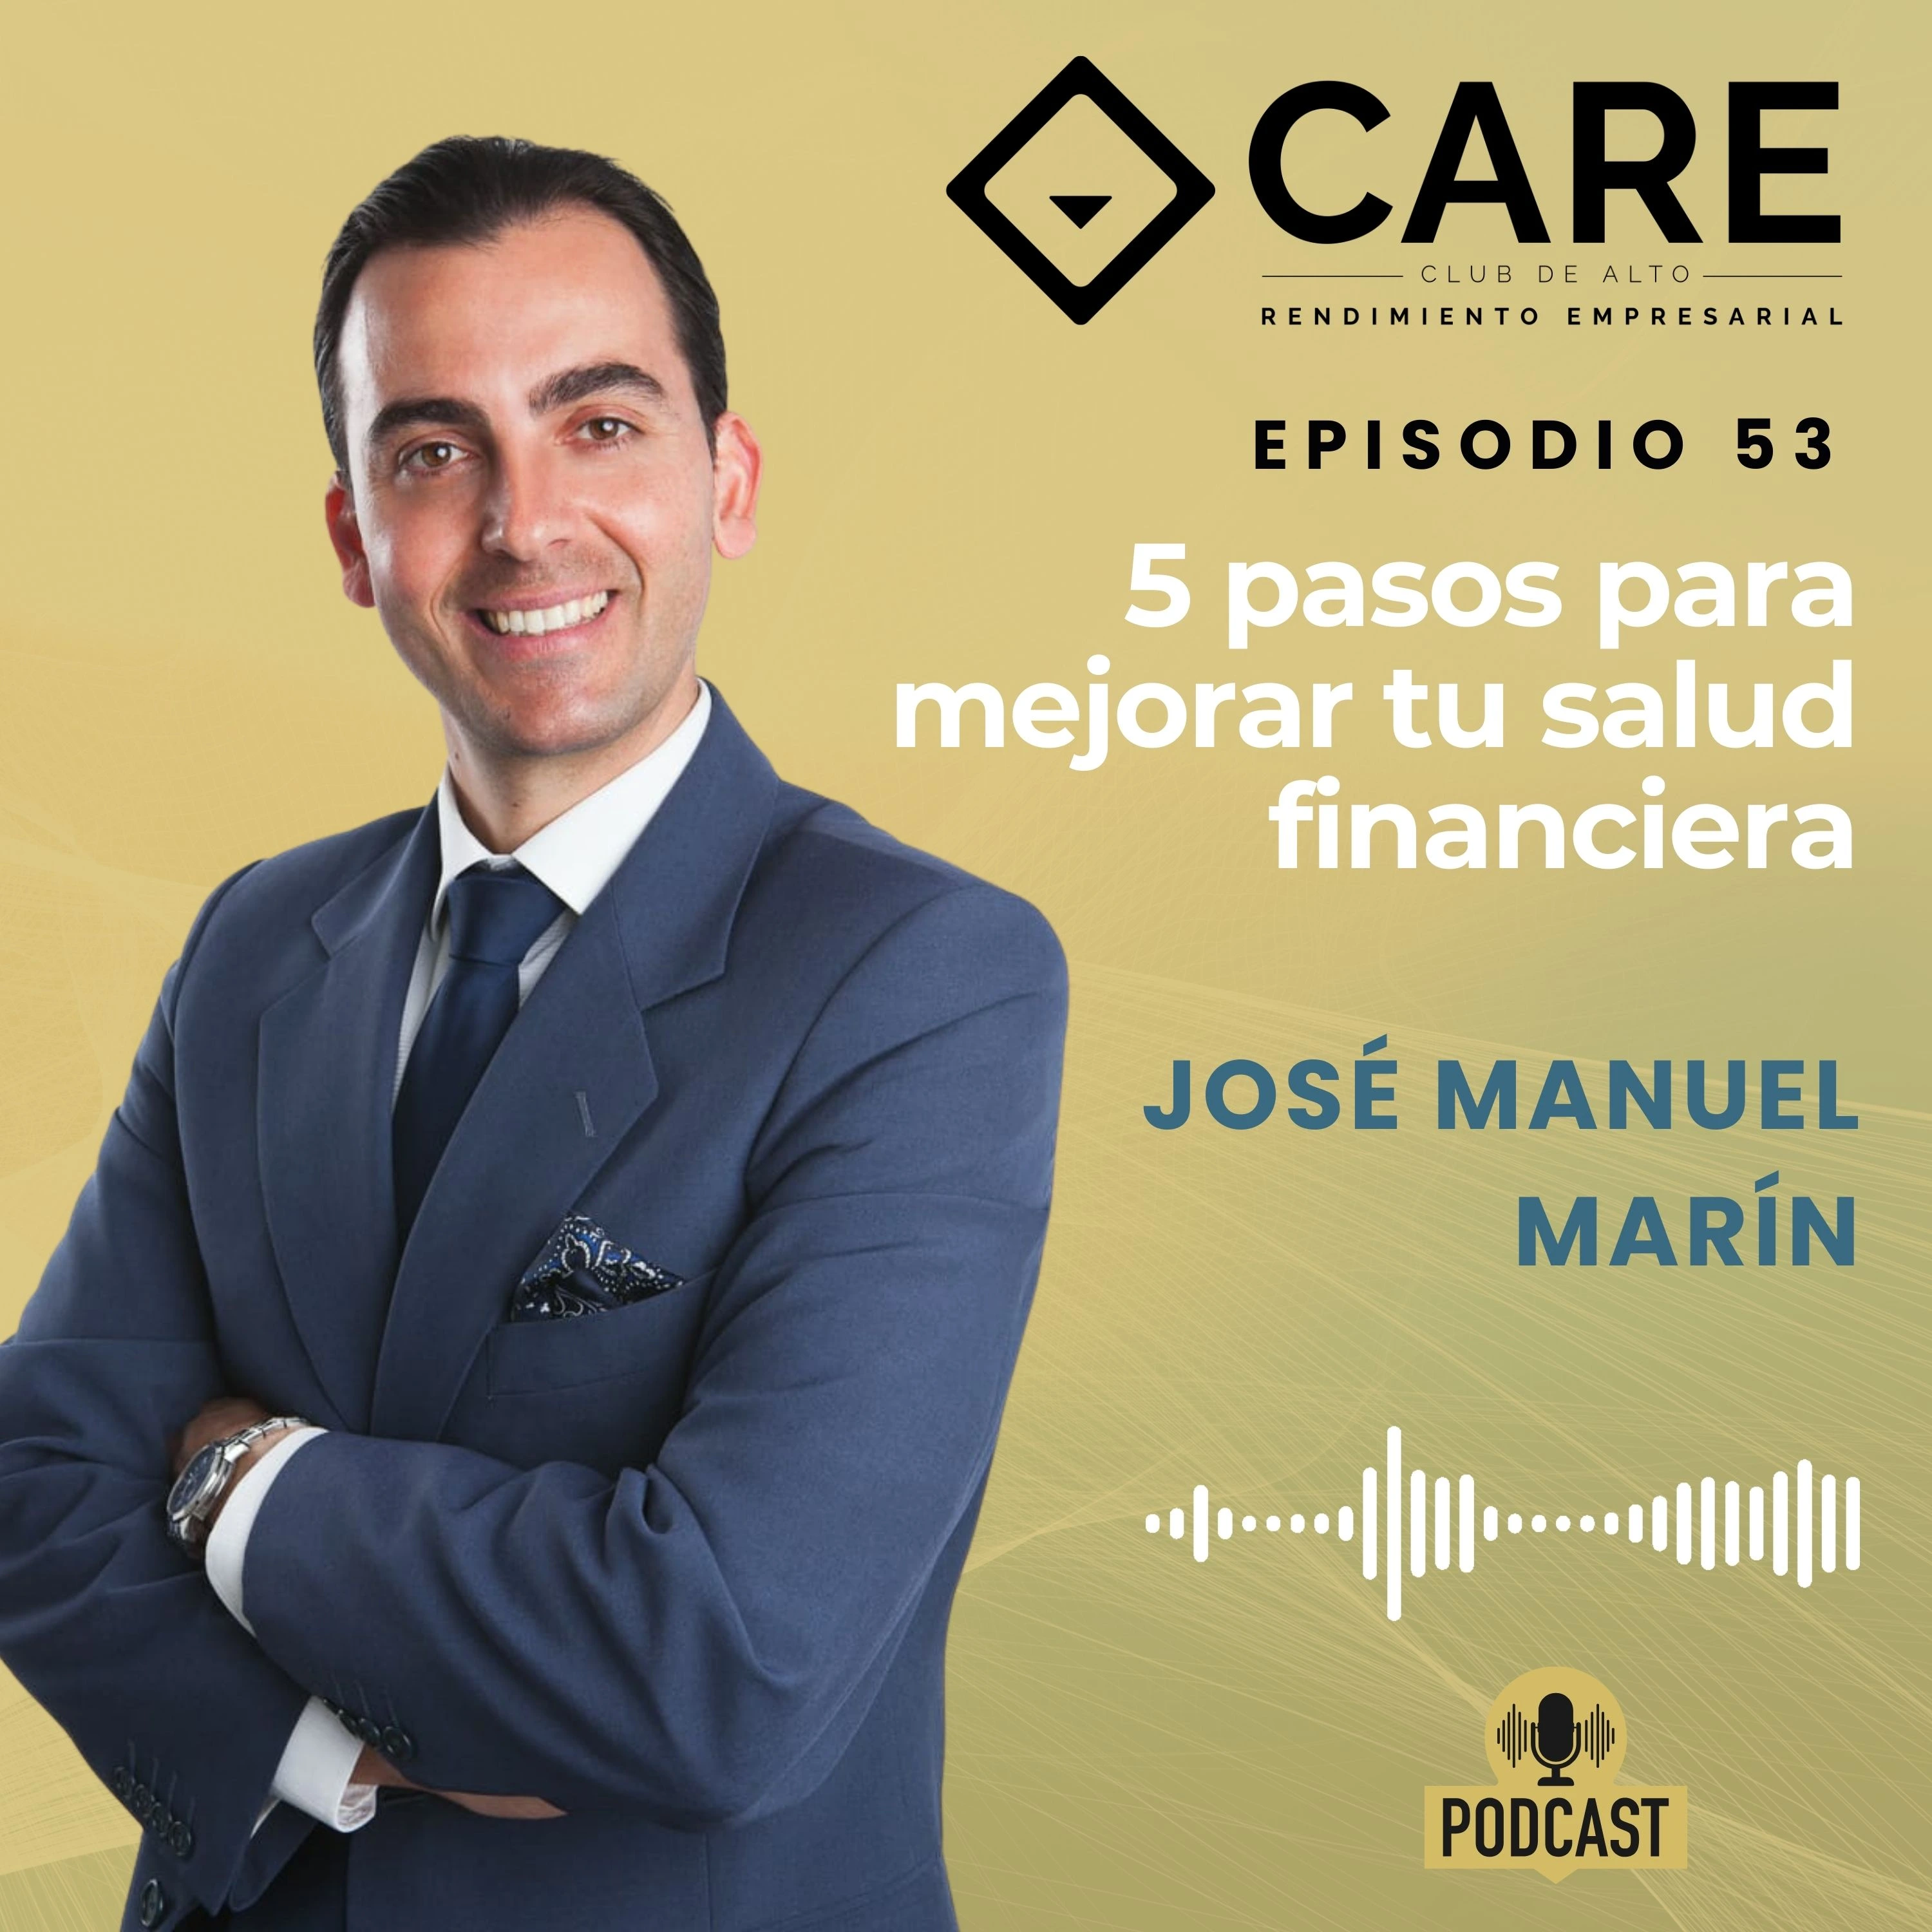 Episodio 53 - 5 Pasos para mejorar tu salud financiera, con José Manuel Marín - Club de Alto Rendimiento Empresarial